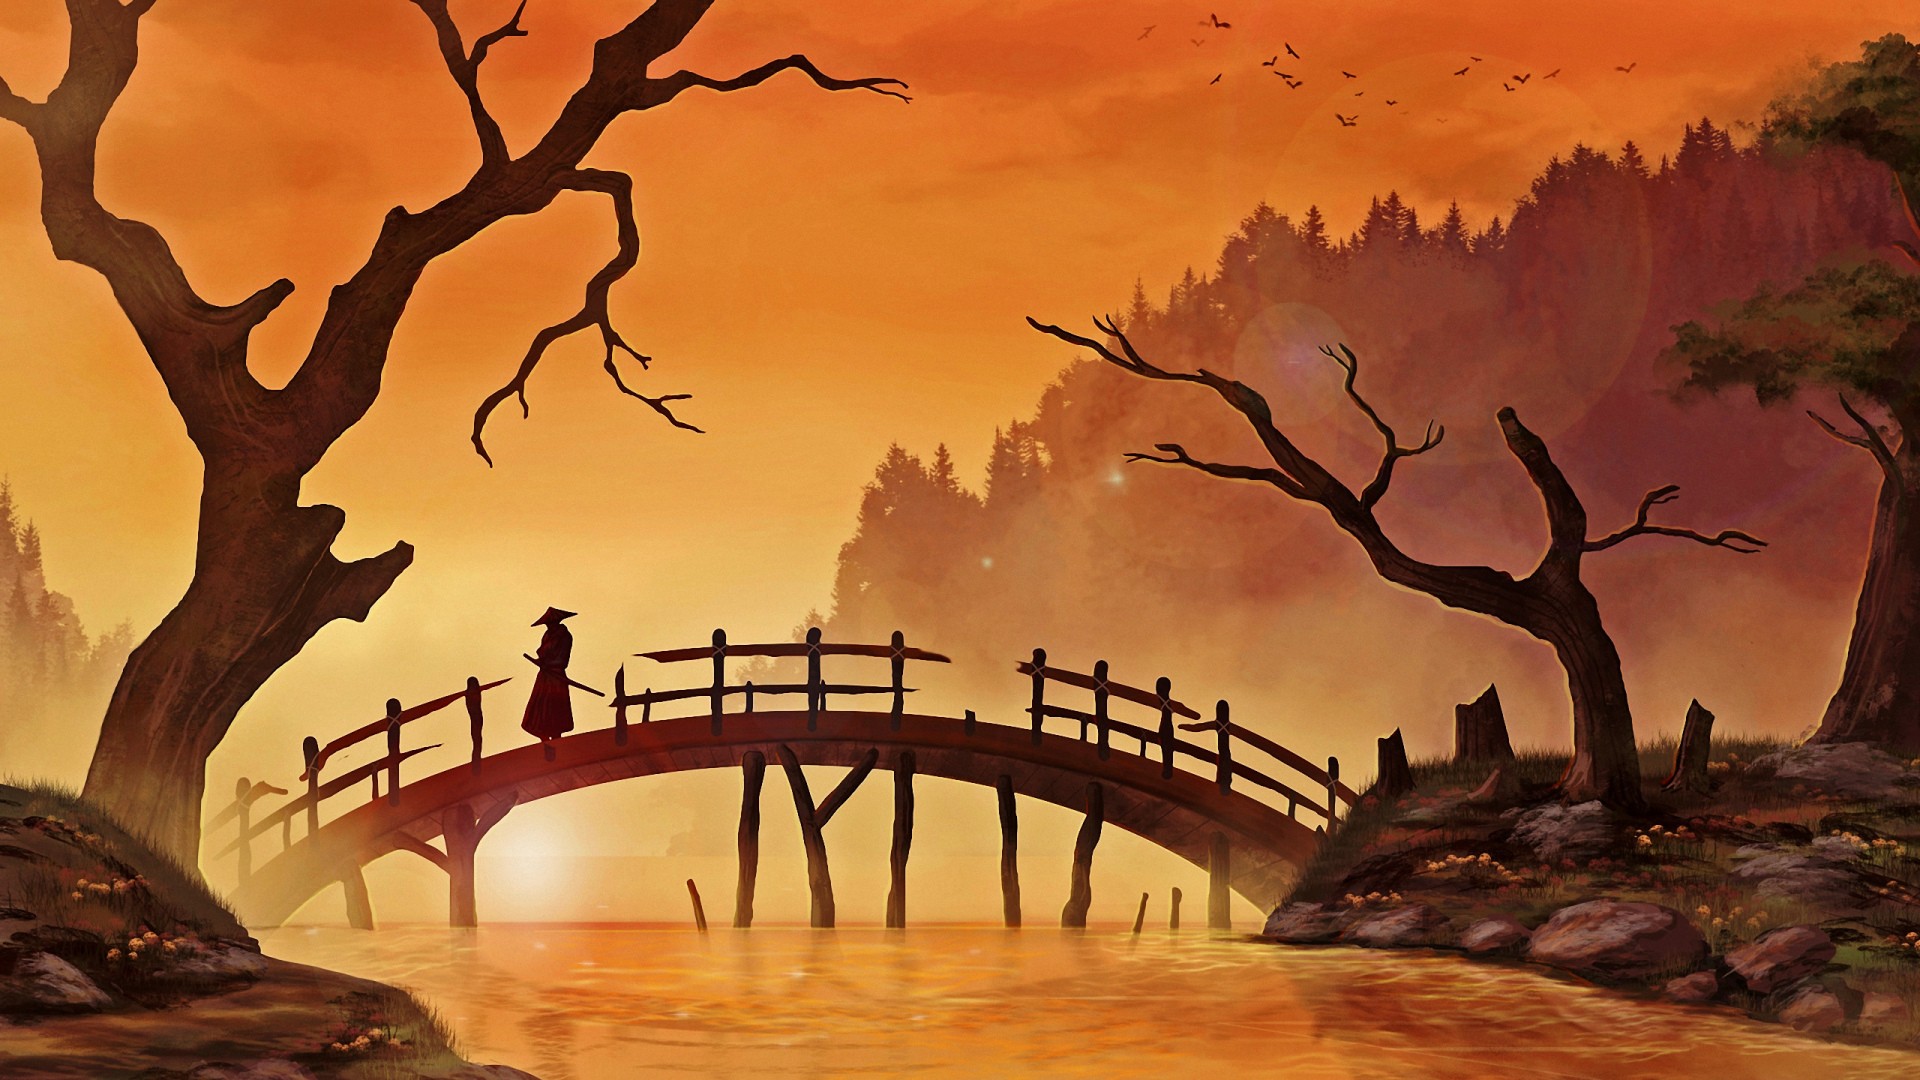 fantasy art, sunset, river, samurai, dead trees, bridge, birds, forest